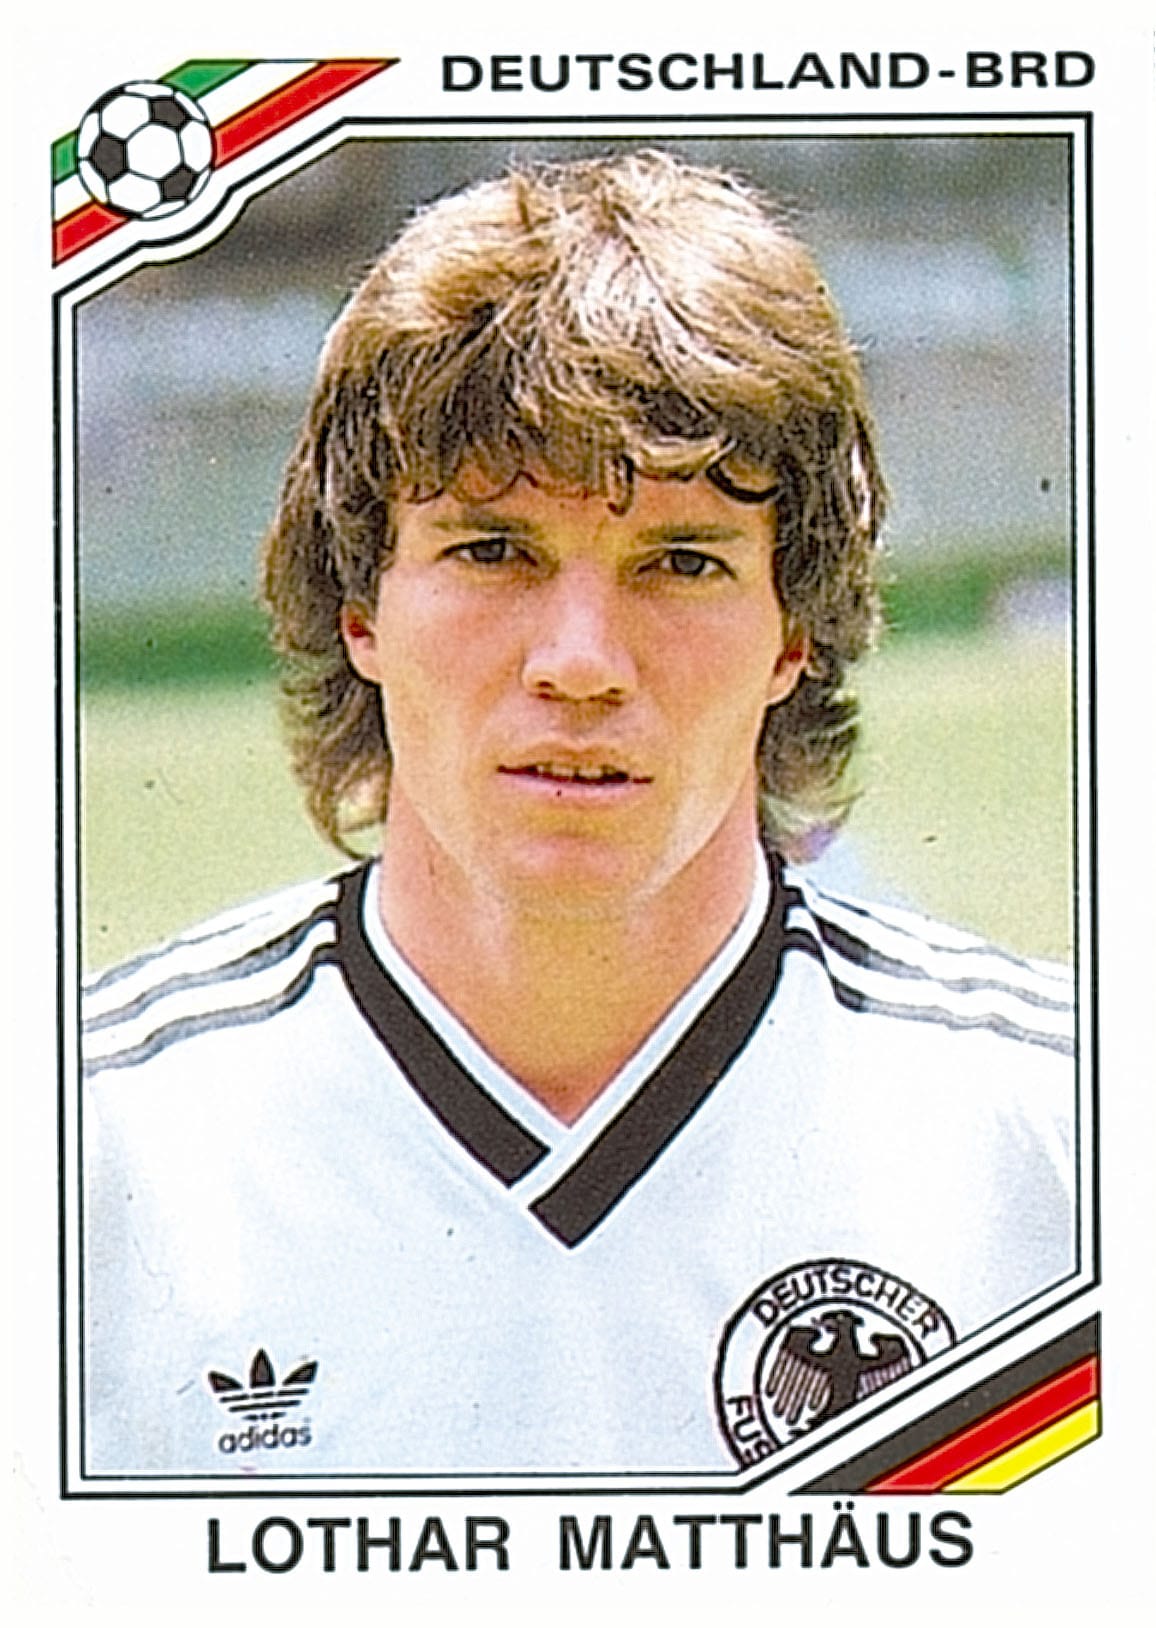 Lothar Matthäus mit Wallemähne: Der einstige Weltfußballer und Sky-Fußball-Experte im Jahr 1986.